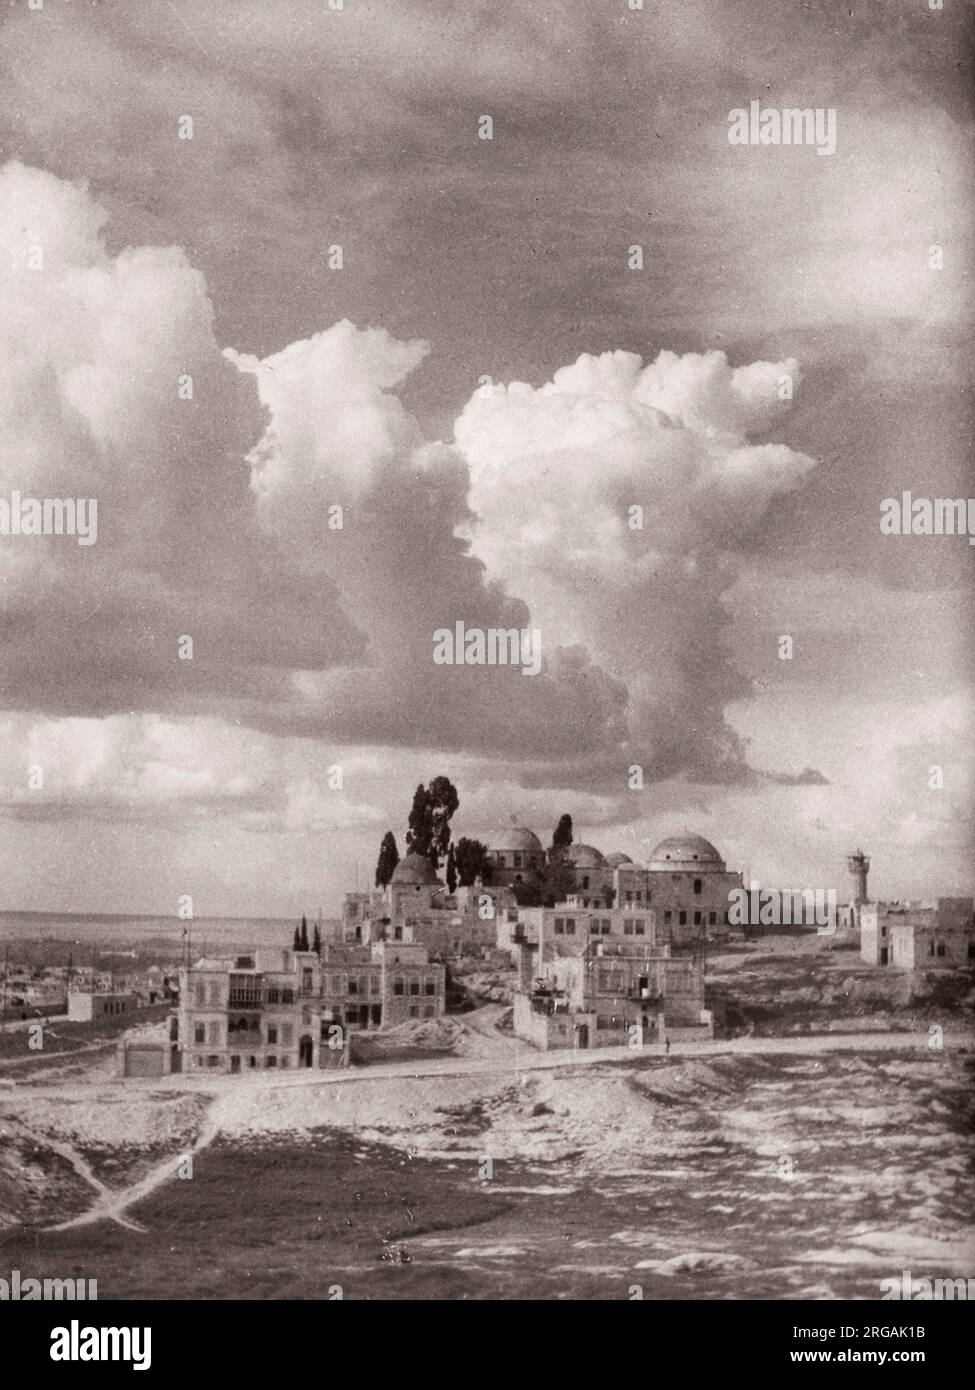 1943 Naher Osten Syrien - Szene in Aleppo - Ansicht des Stadtfotos eines während des Zweiten Weltkriegs in Ostafrika und im Nahen Osten stationierten britischen Militärs Stockfoto